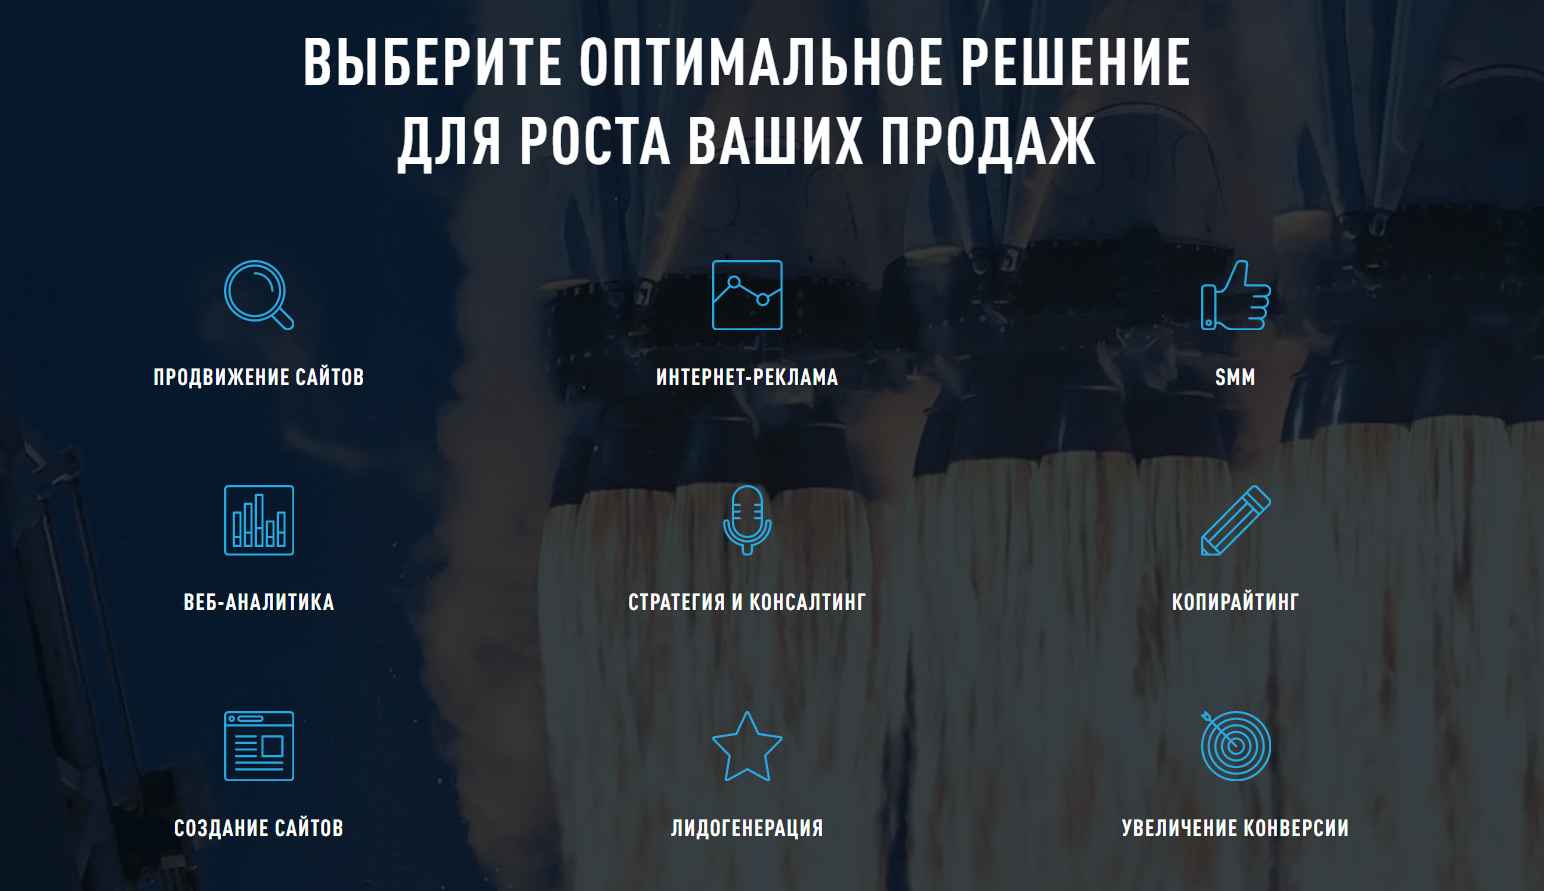 продвижение сайтов optimism.ru